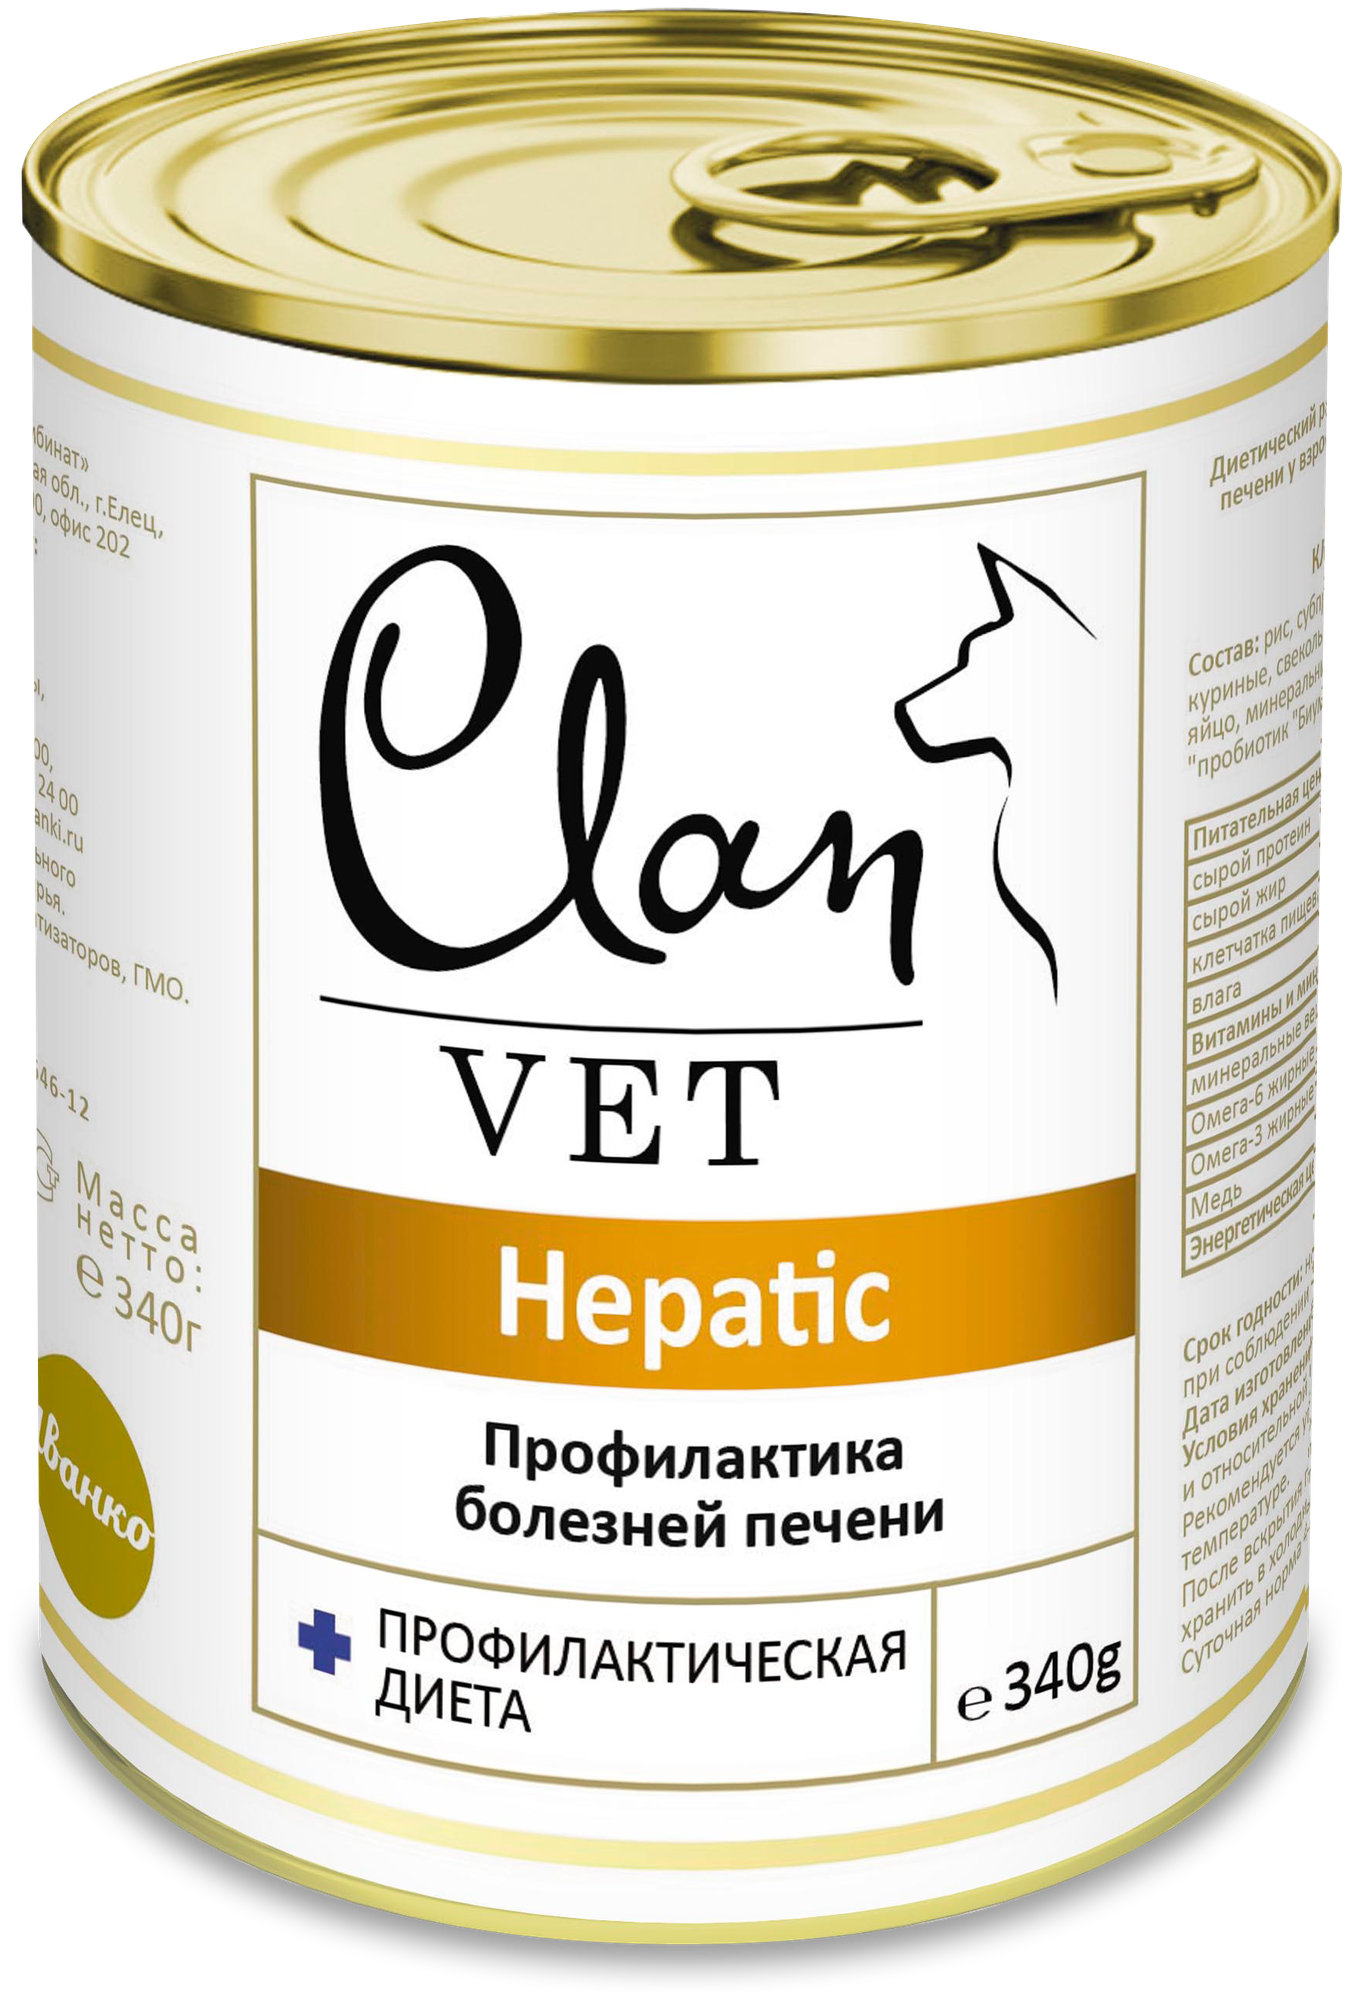 Влажный корм для собак CLAN VET, при заболеваниях печени 1 уп. х 1 шт. х 340 г